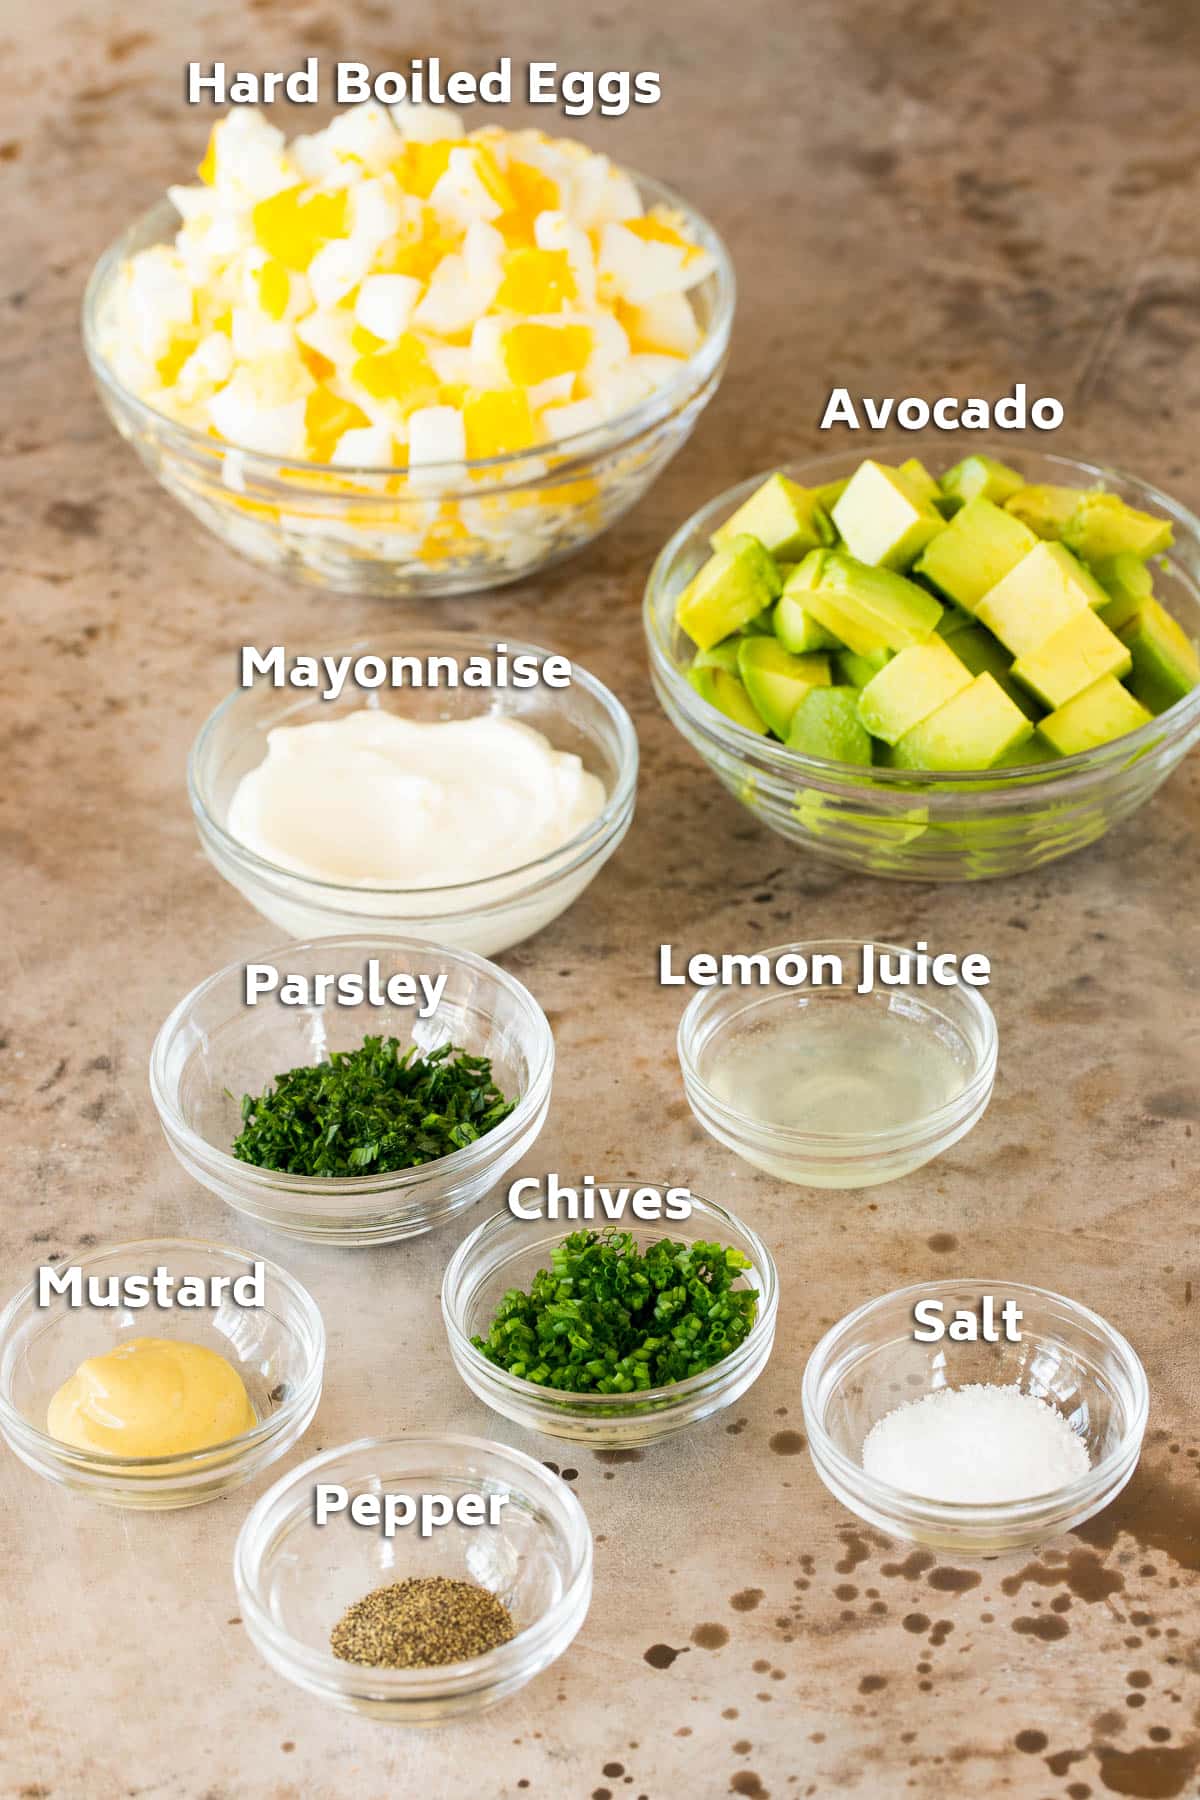 Bowls of ingredients including hard boiled eggs, avocado, seasonings and herbs.